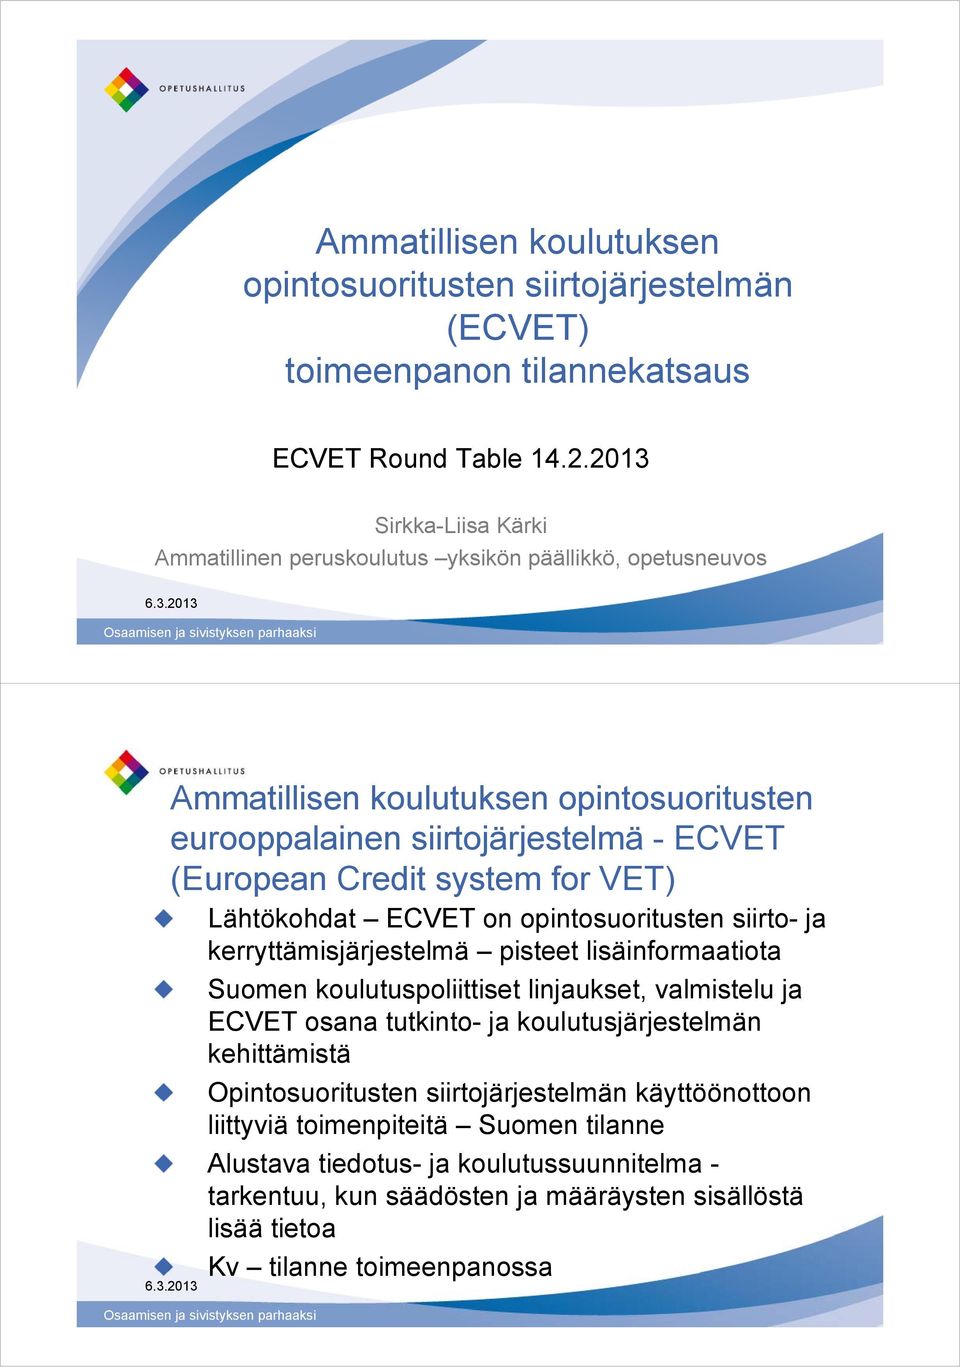 system for VET) Lähtökohdat on opintosuoritusten siirto- ja kerryttämisjärjestelmä pisteet lisäinformaatiota Suomen koulutuspoliittiset linjaukset, valmistelu ja osana tutkinto- ja